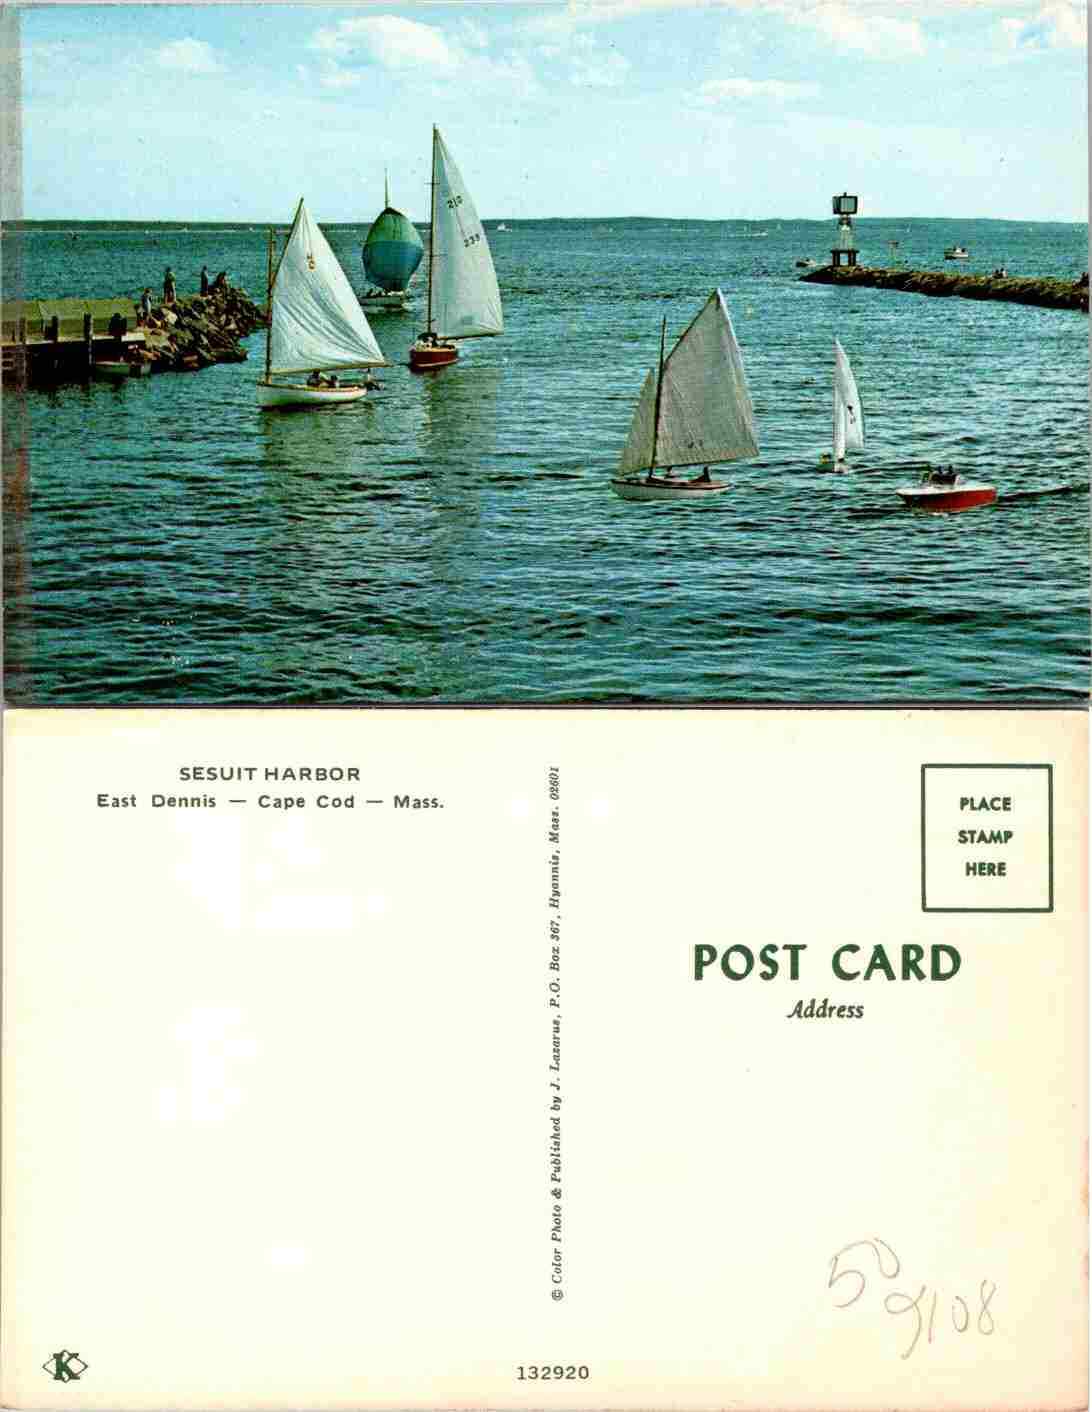 Vintage Postcard - Sesuit Harbor Antique Boats Cape Cod Massachusetts Cape Cod